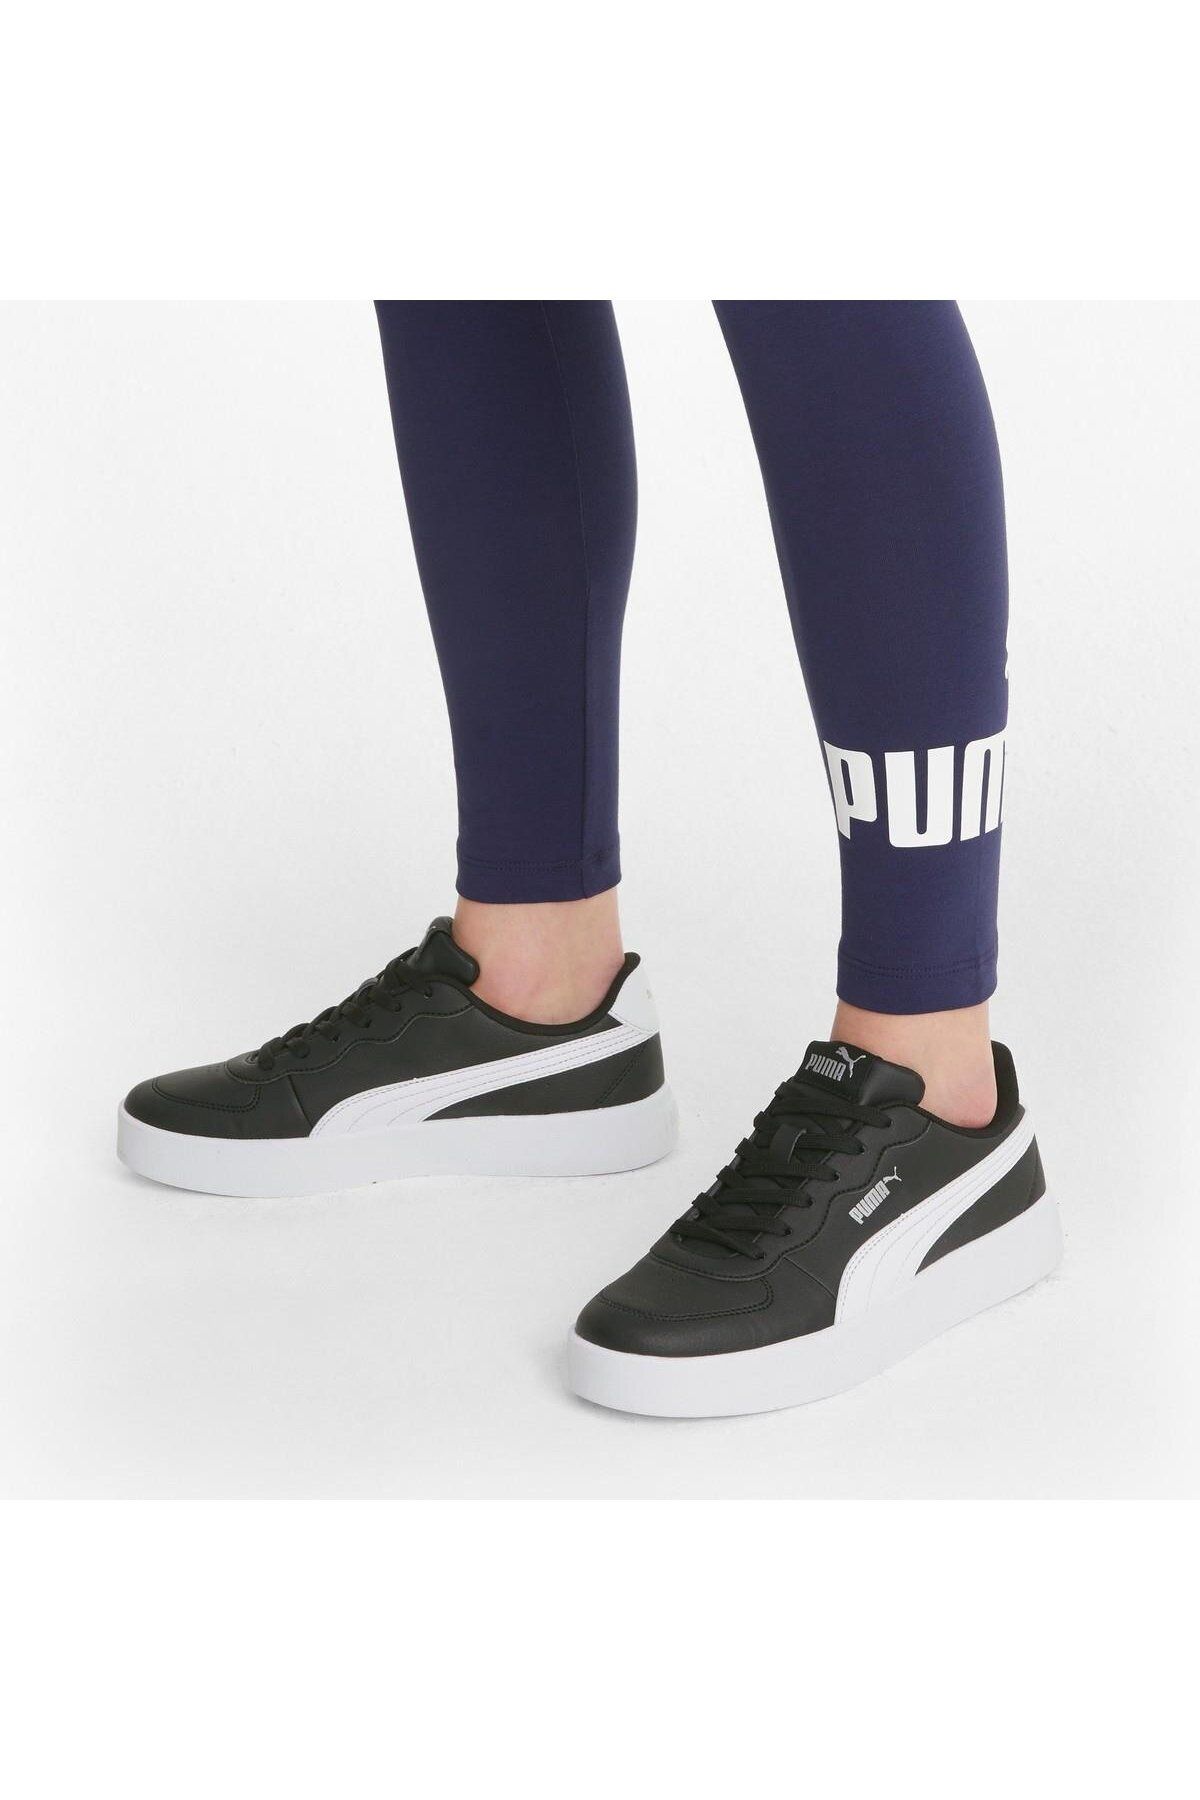 Puma Günlük Rahat Unisex Spor Ayakkabı Sneaker